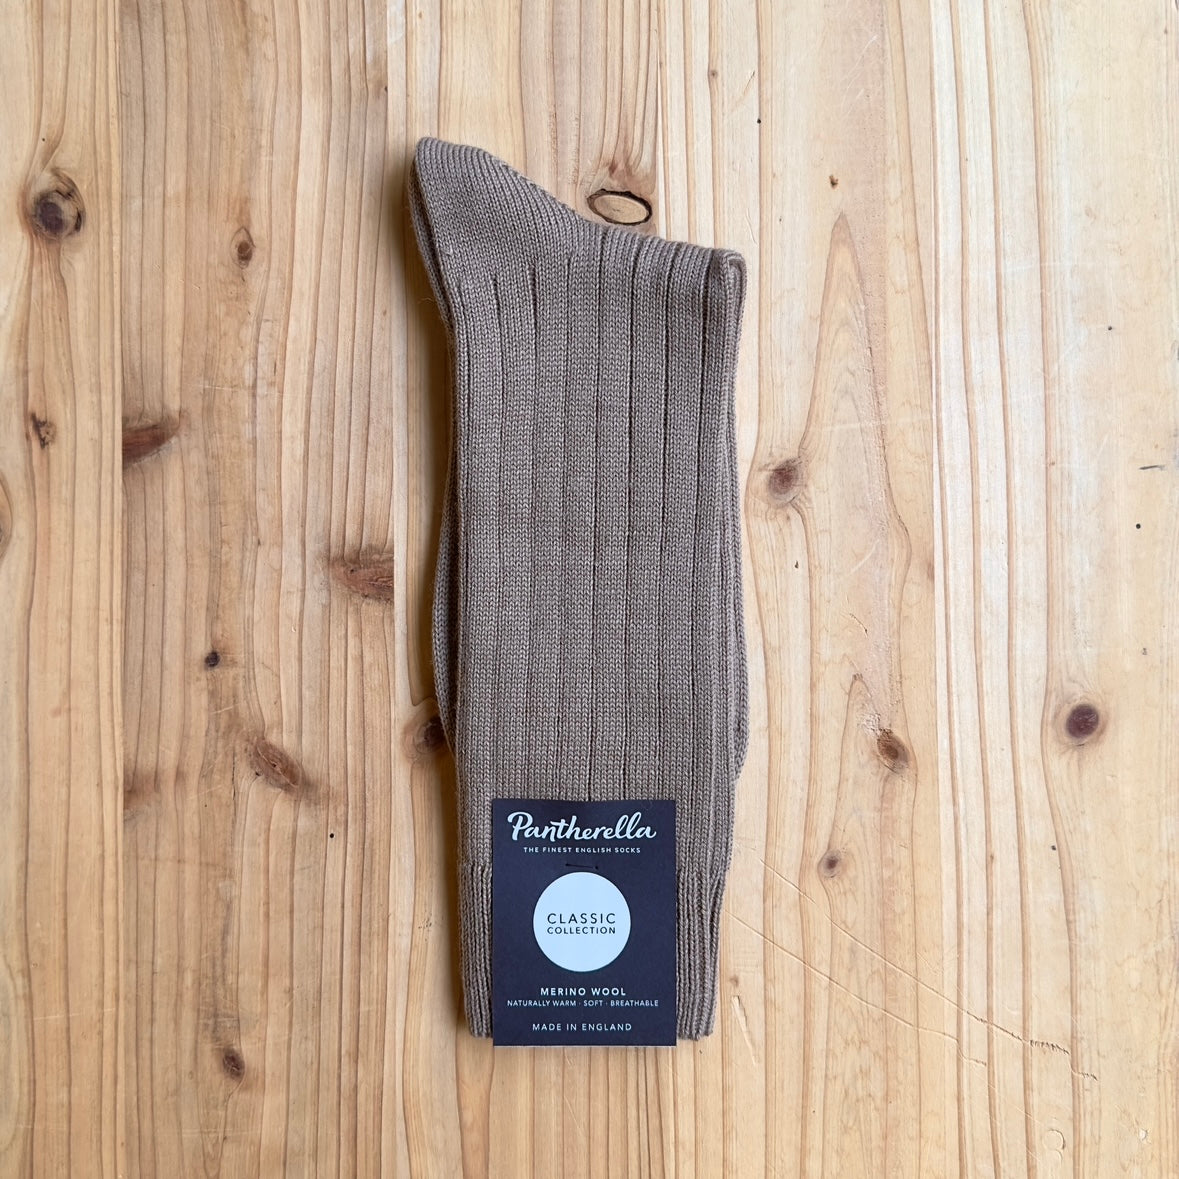 Pantherella Merino Wool Socks B59905